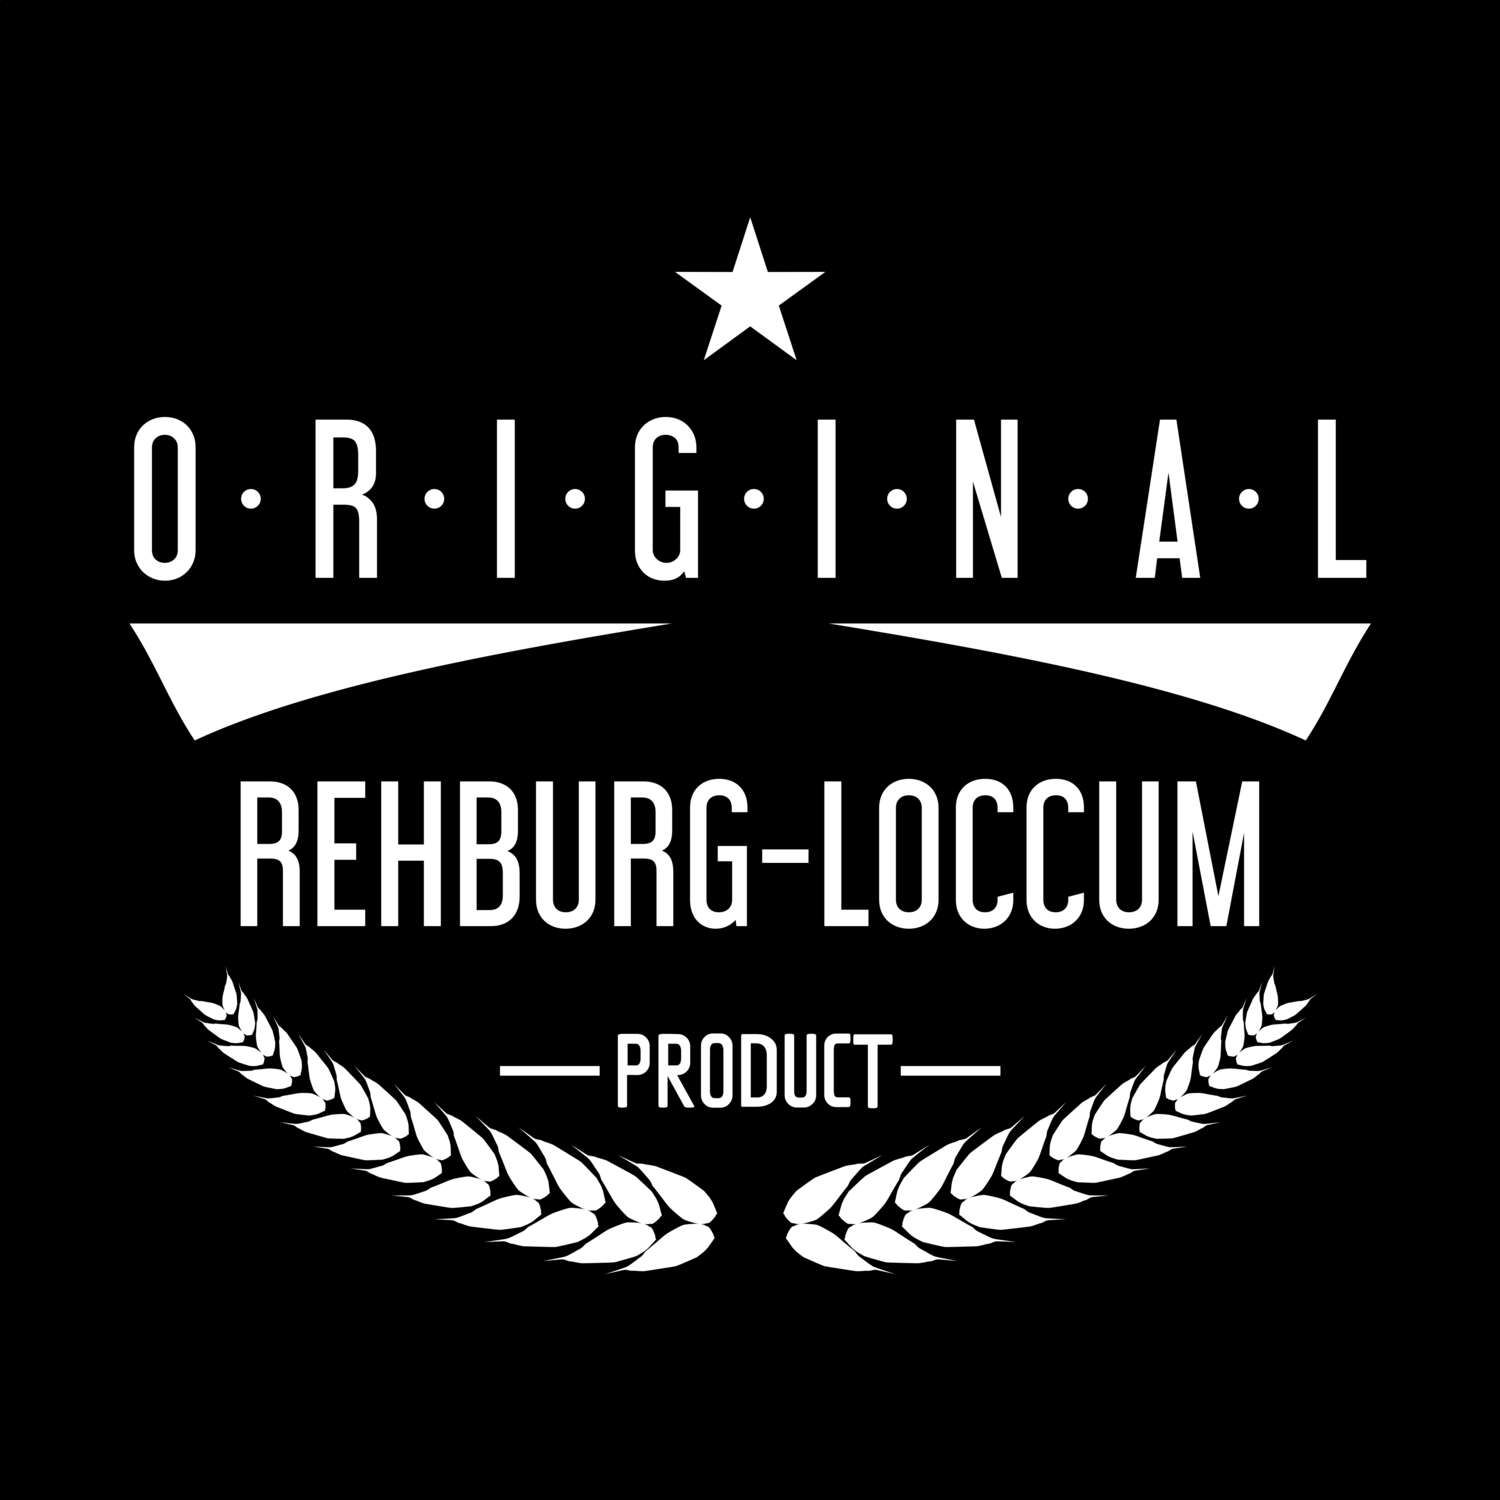 Rehburg-Loccum T-Shirt »Original Product«